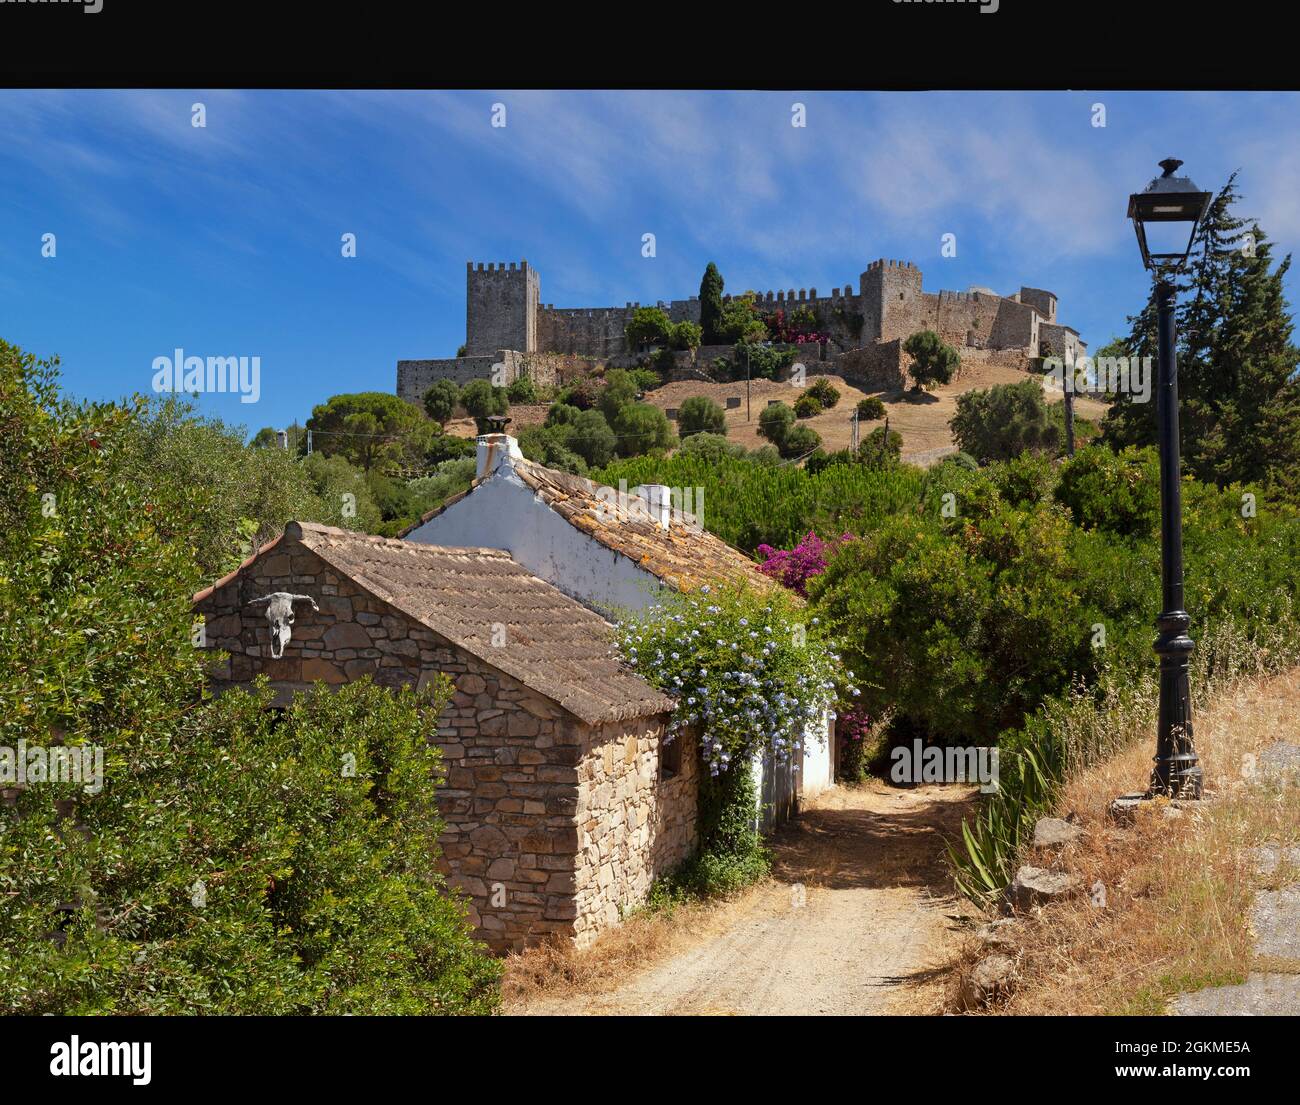 Le village fortifié de Castellar de la Frontera, dans la province de Cadix, en Andalousie, Espagne, est situé dans une forteresse mauresque-chrétienne préservée. Banque D'Images